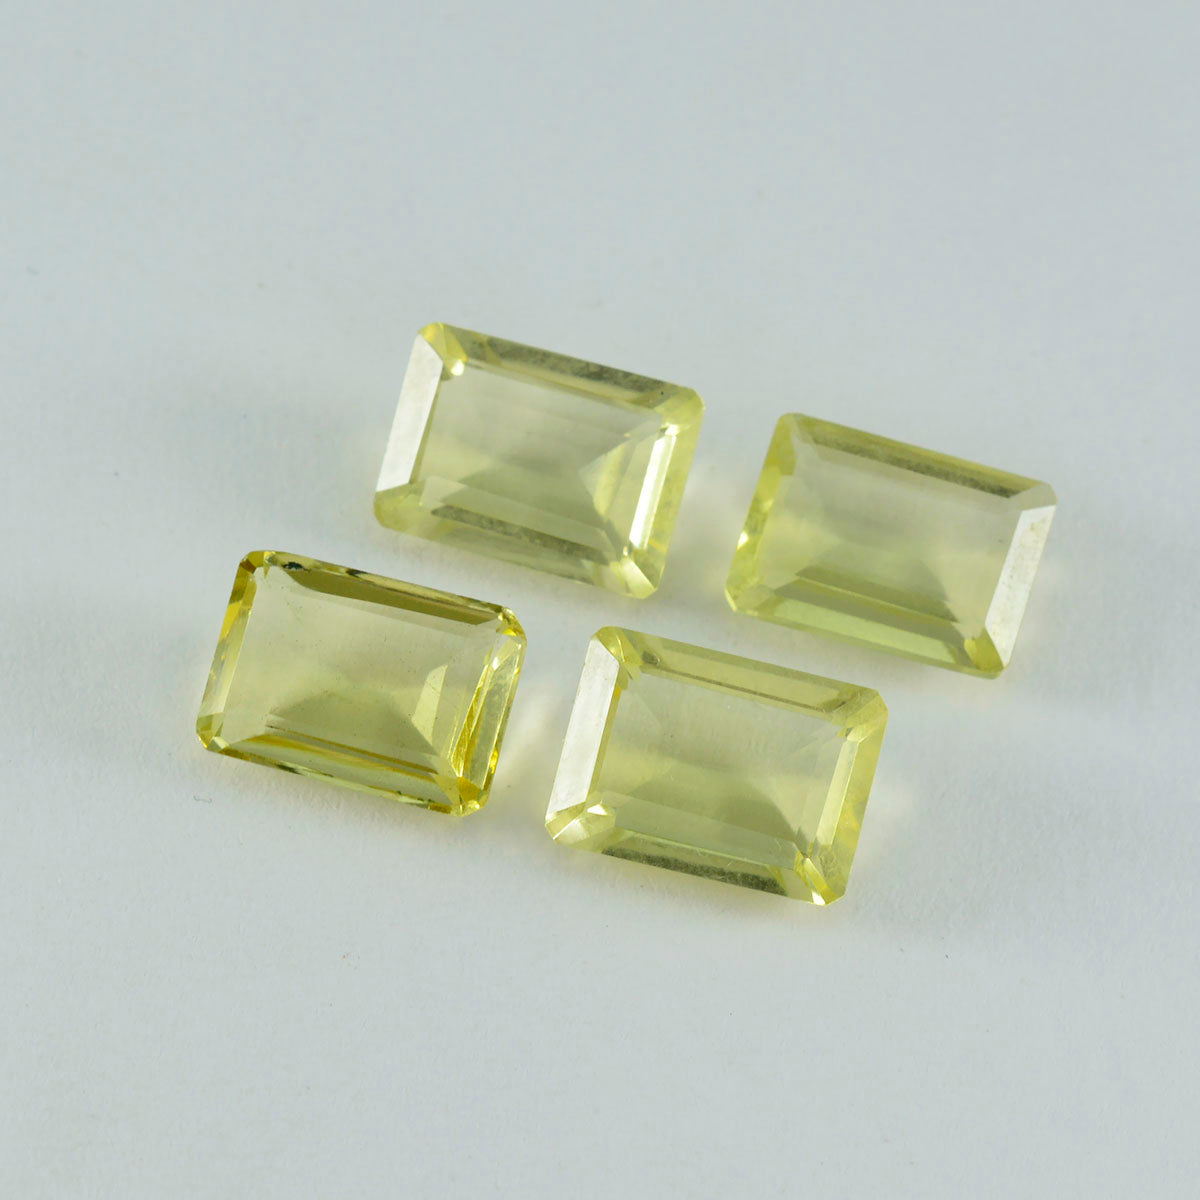 riyogems 1шт желтый лимонный кварц ограненный 10x12 мм восьмиугольная форма привлекательный качественный драгоценный камень